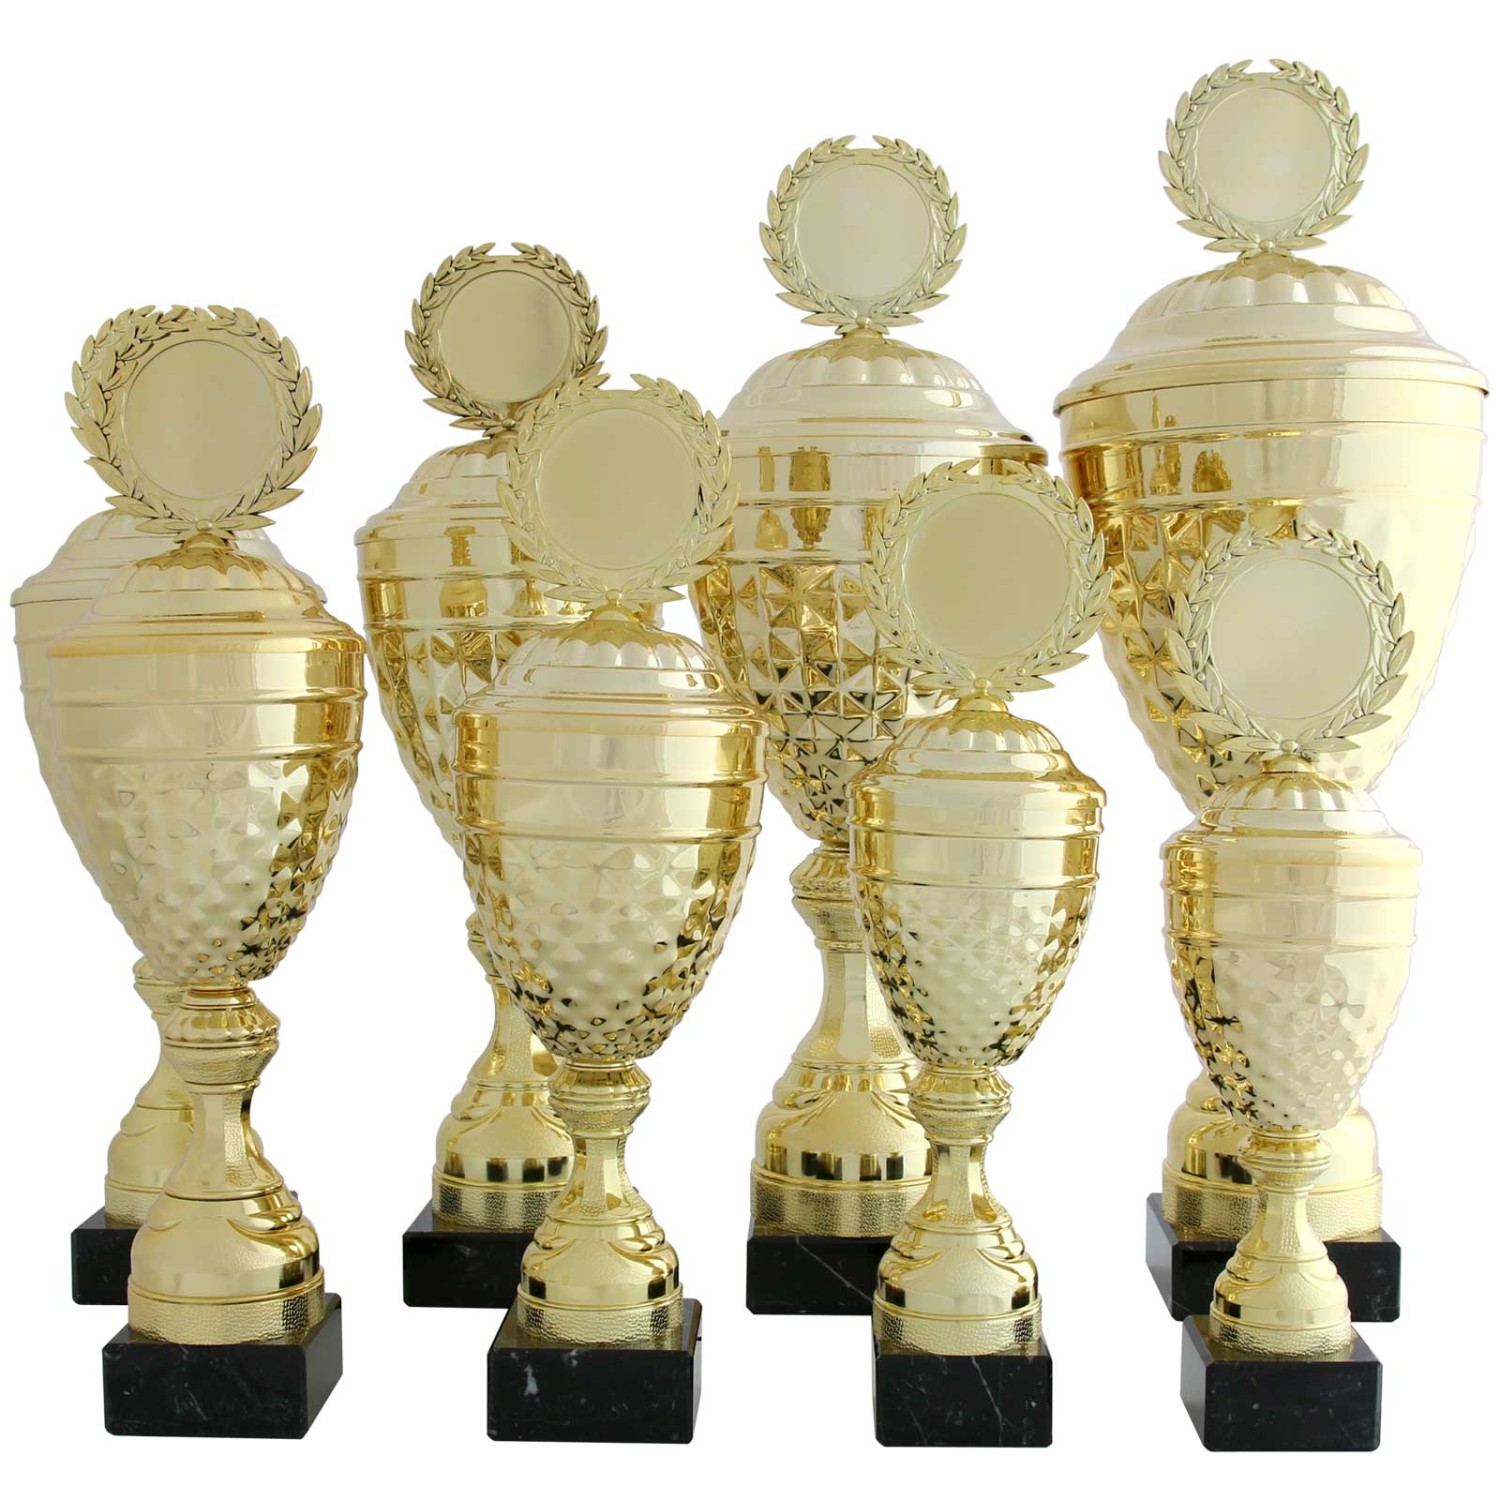 2. Foto Pokal ALBI Pokalset Metall gold mit Deckel 8 Größen mit Gravur (Höhe: 41,5 cm hoch)